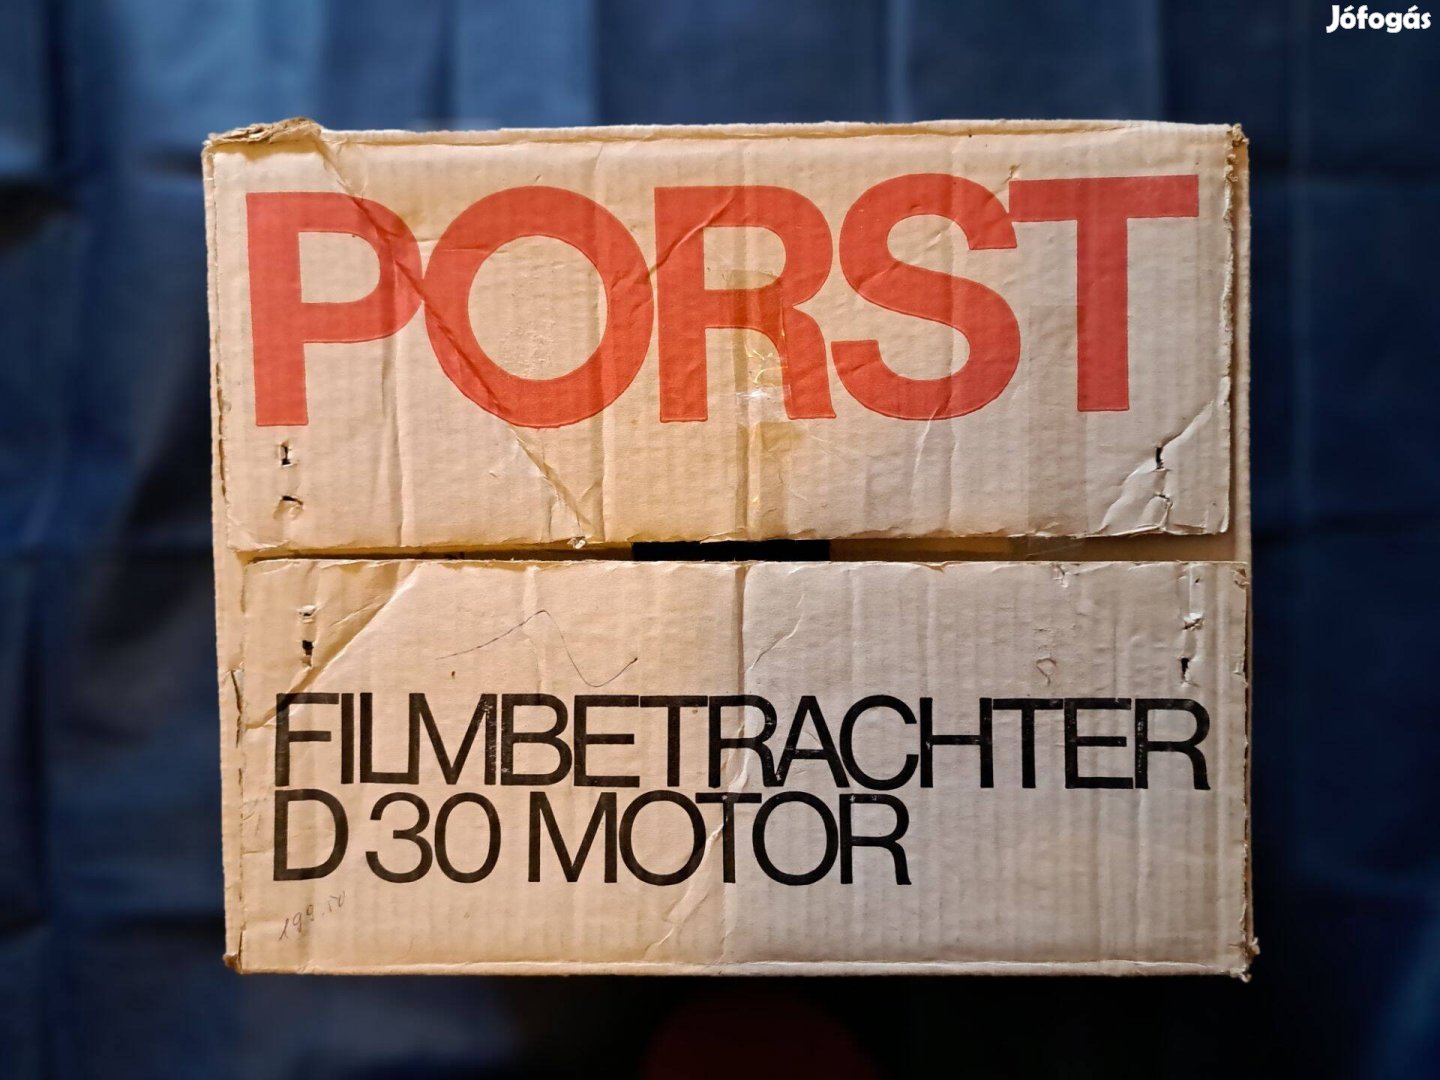 Porst D30 motoros filmnéző készülék